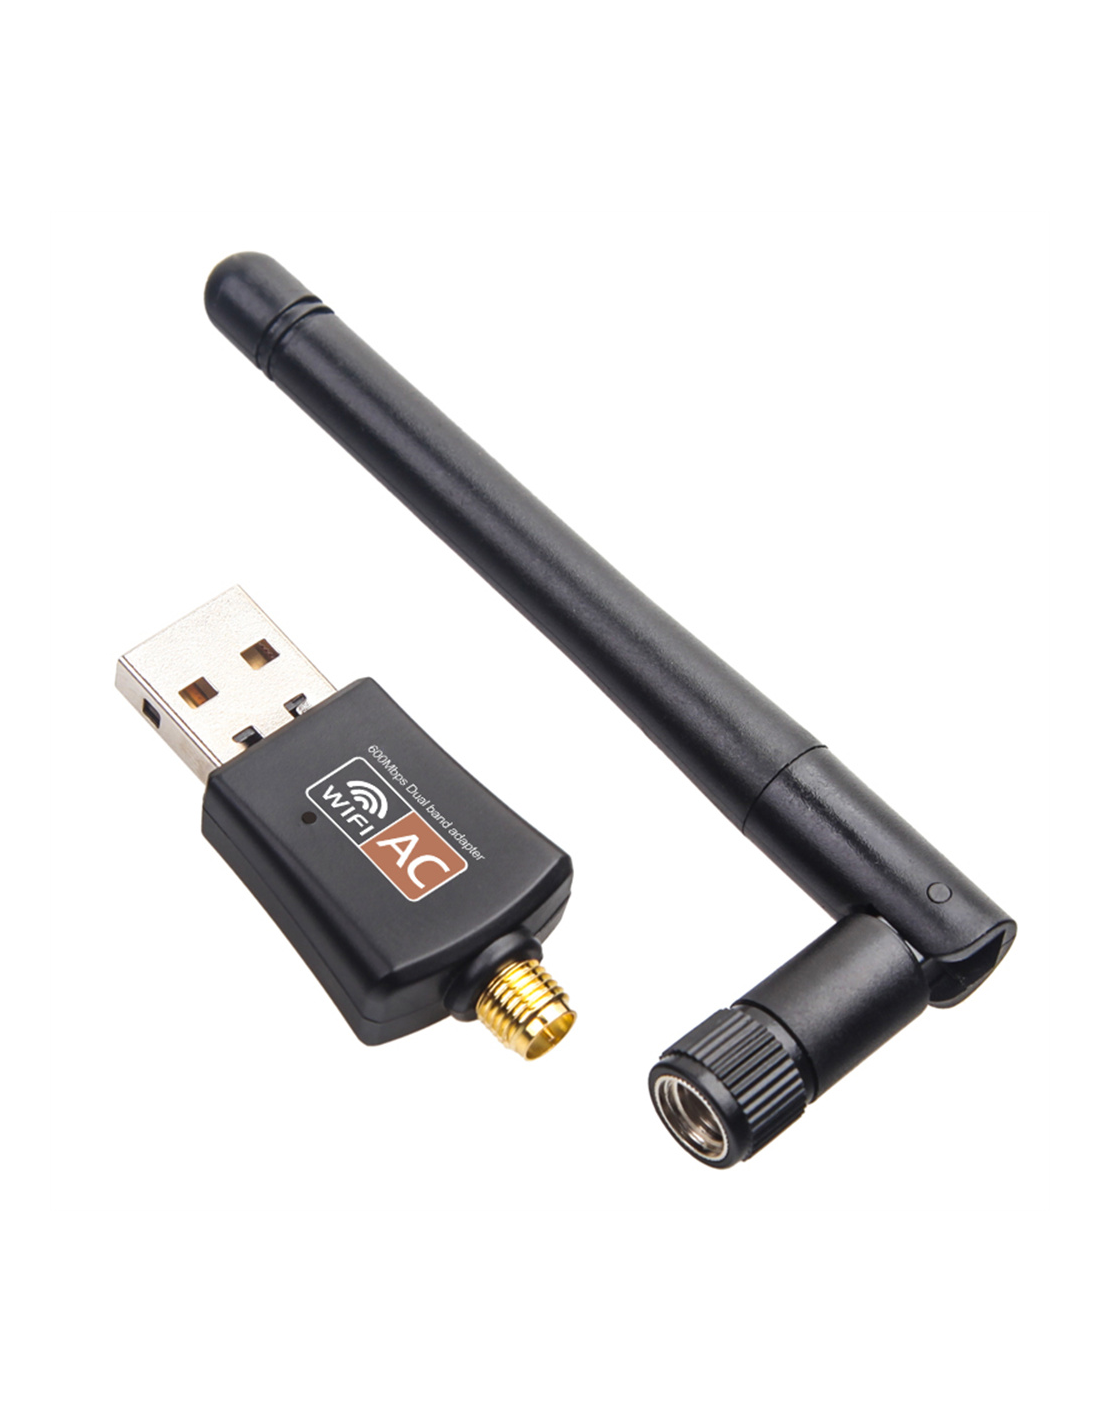 Cle USB 2.0 WIFI IEEE802.11 a/b/g/n/ac - 600AC - Une antenne - Dual band -  Débit 150+433Mbps au meilleur prix